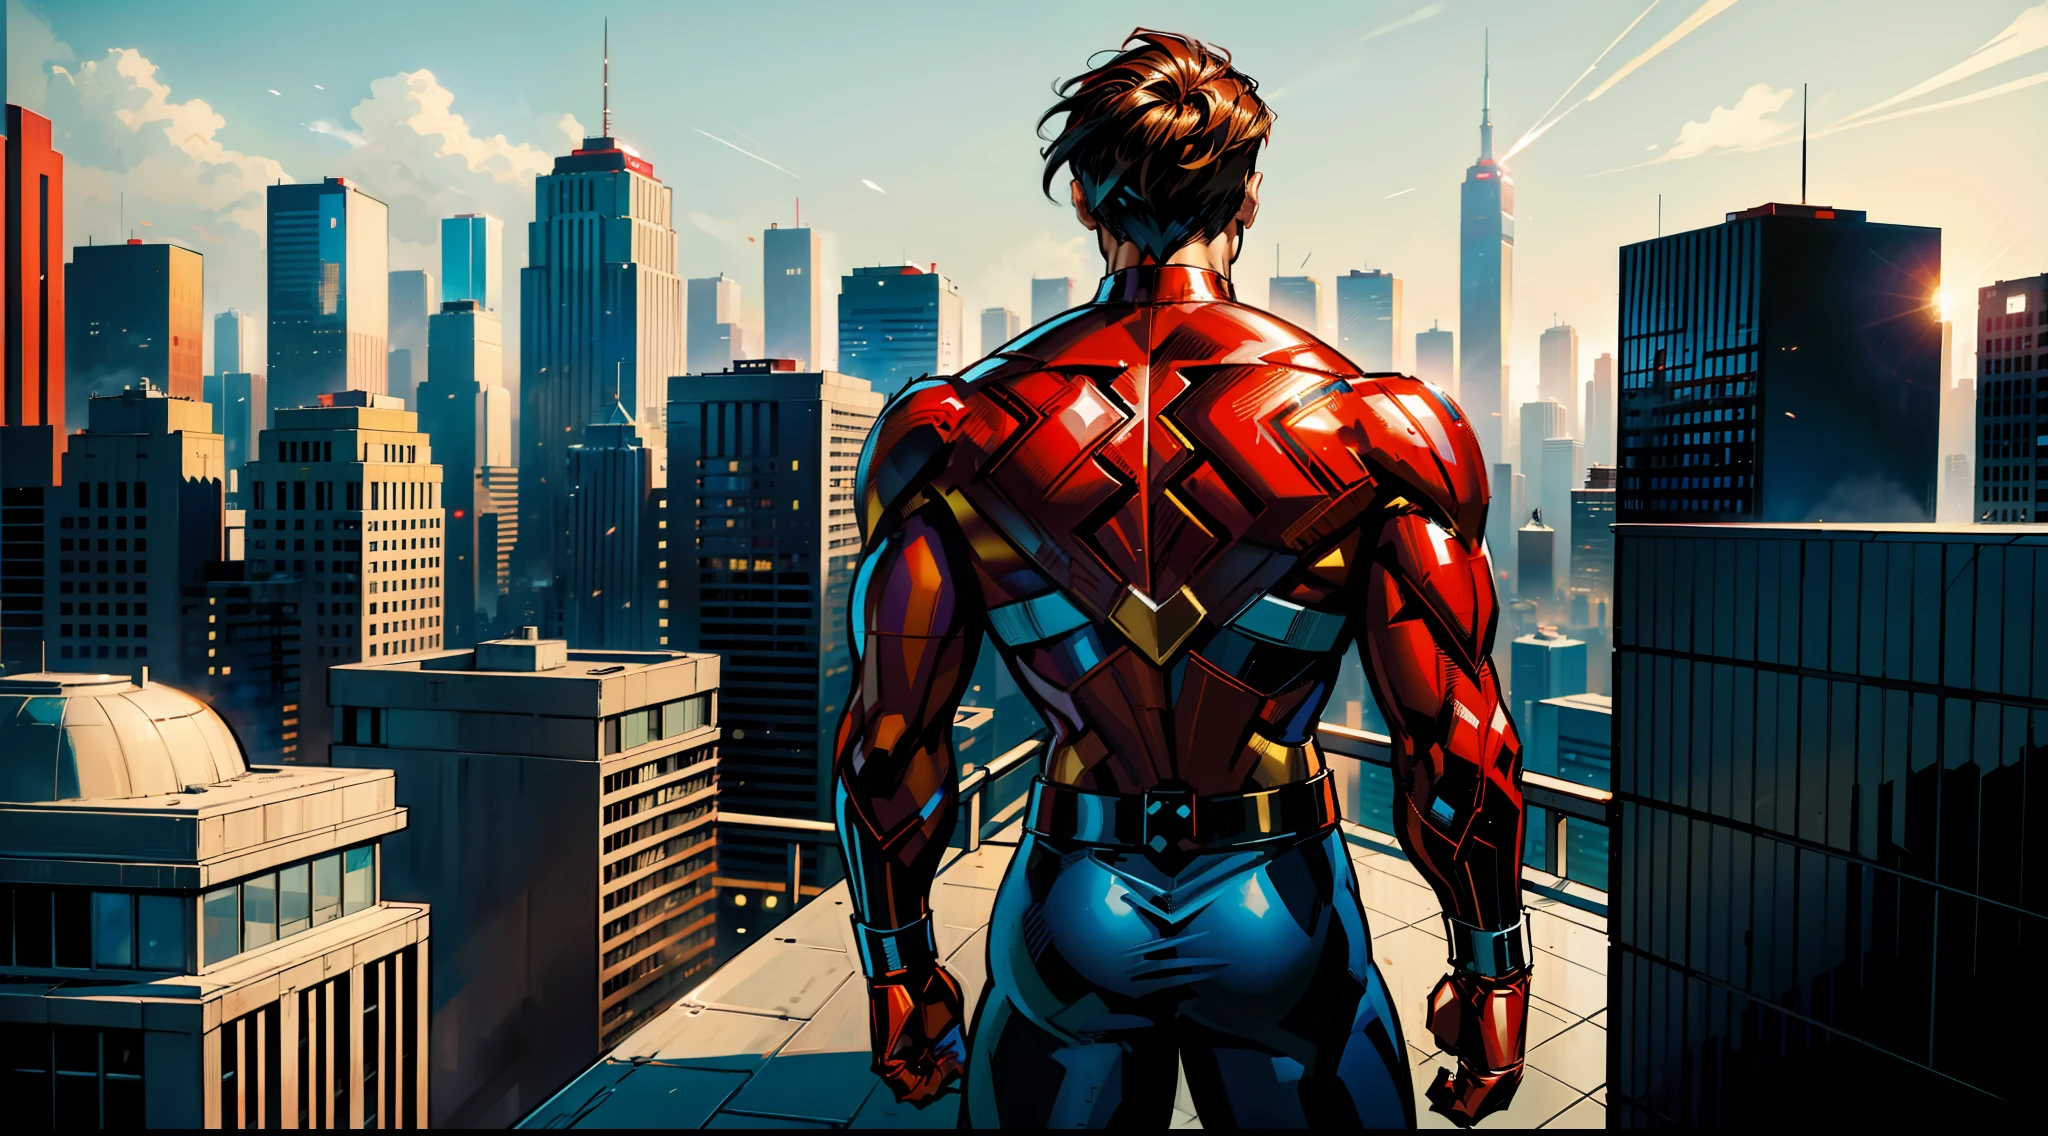 Mann, Superheld, gekleidet in rot-weißem Superheldenkostüm, minimale Golddetails in seinem Kostüm, von hinten gesehen, auf einem Gebäude, Blick auf eine moderne Stadt als Hintergrund, von Stan Lee, von Jim Lee, Von Joe Bennet, Comic-Stil, modern Comic-Stil.